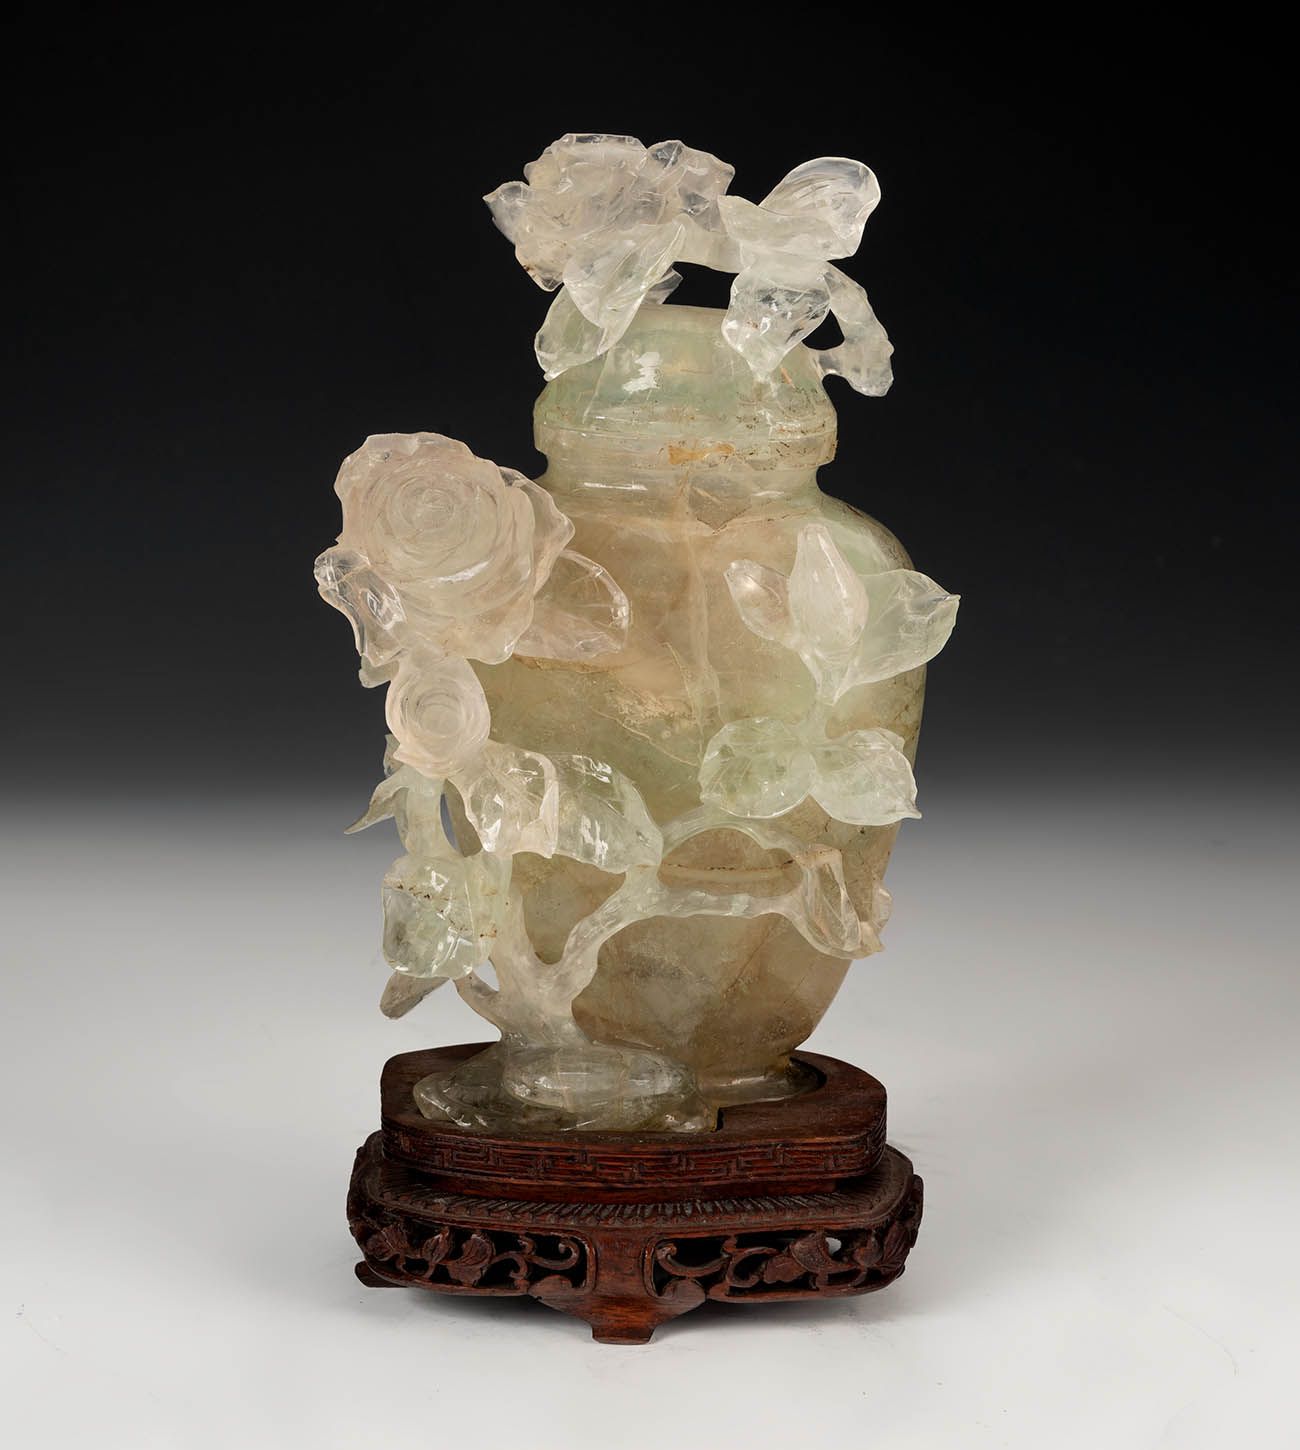 Null Potiche con flores. China, siglo XX.
Fluorita tallada a mano sobre base de &hellip;